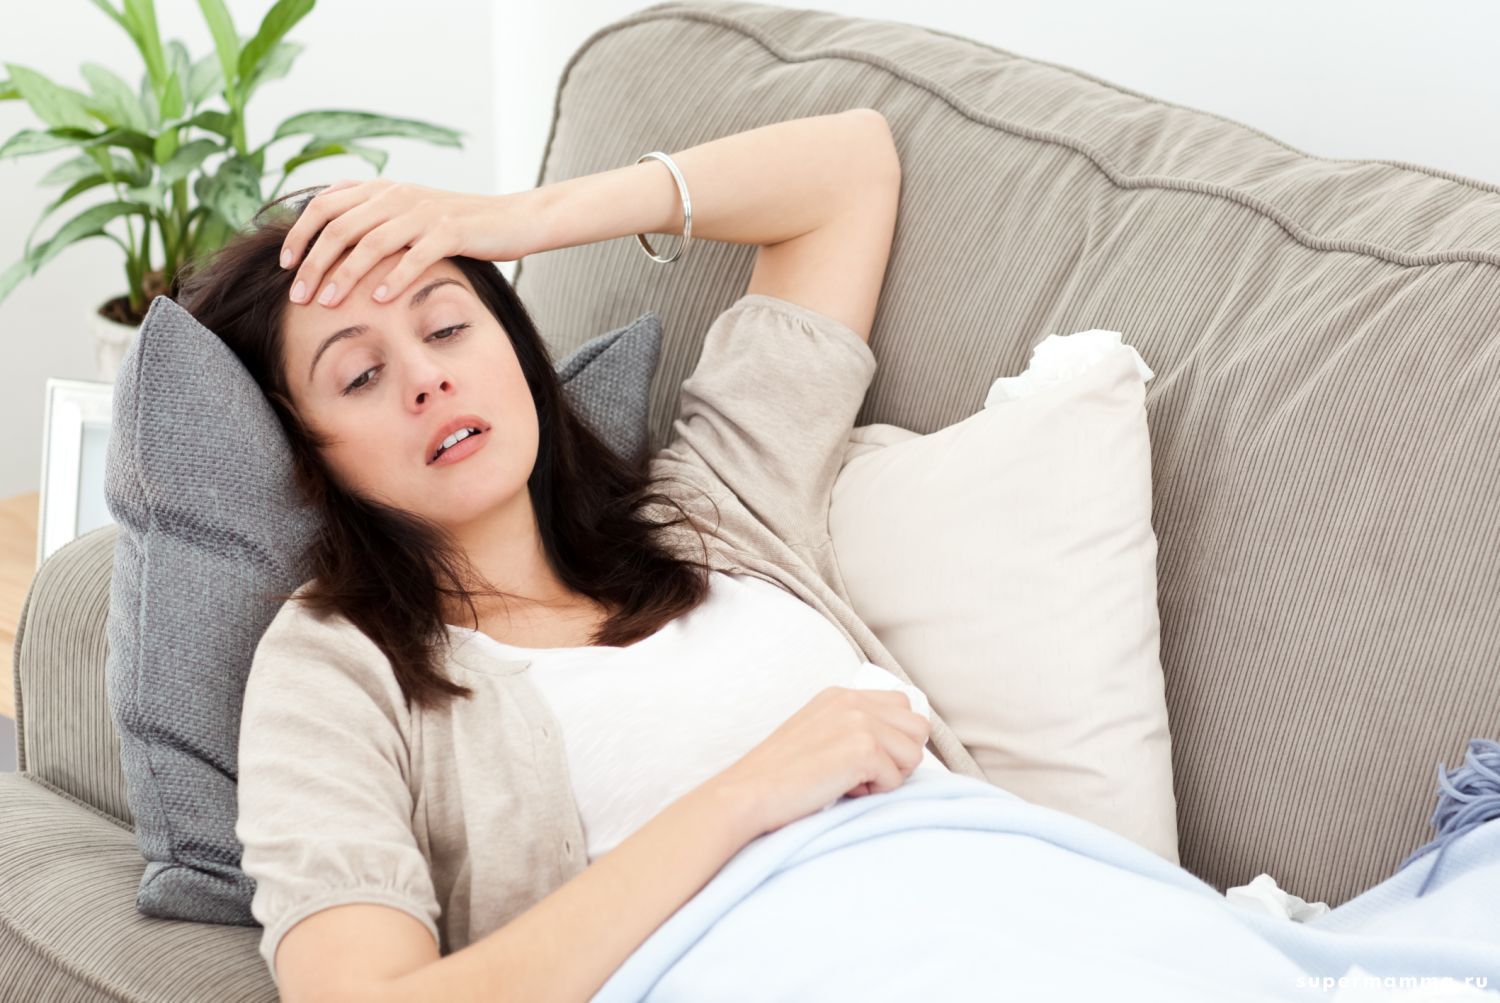 Головная боль при беременности: норма или сигнал тревоги?